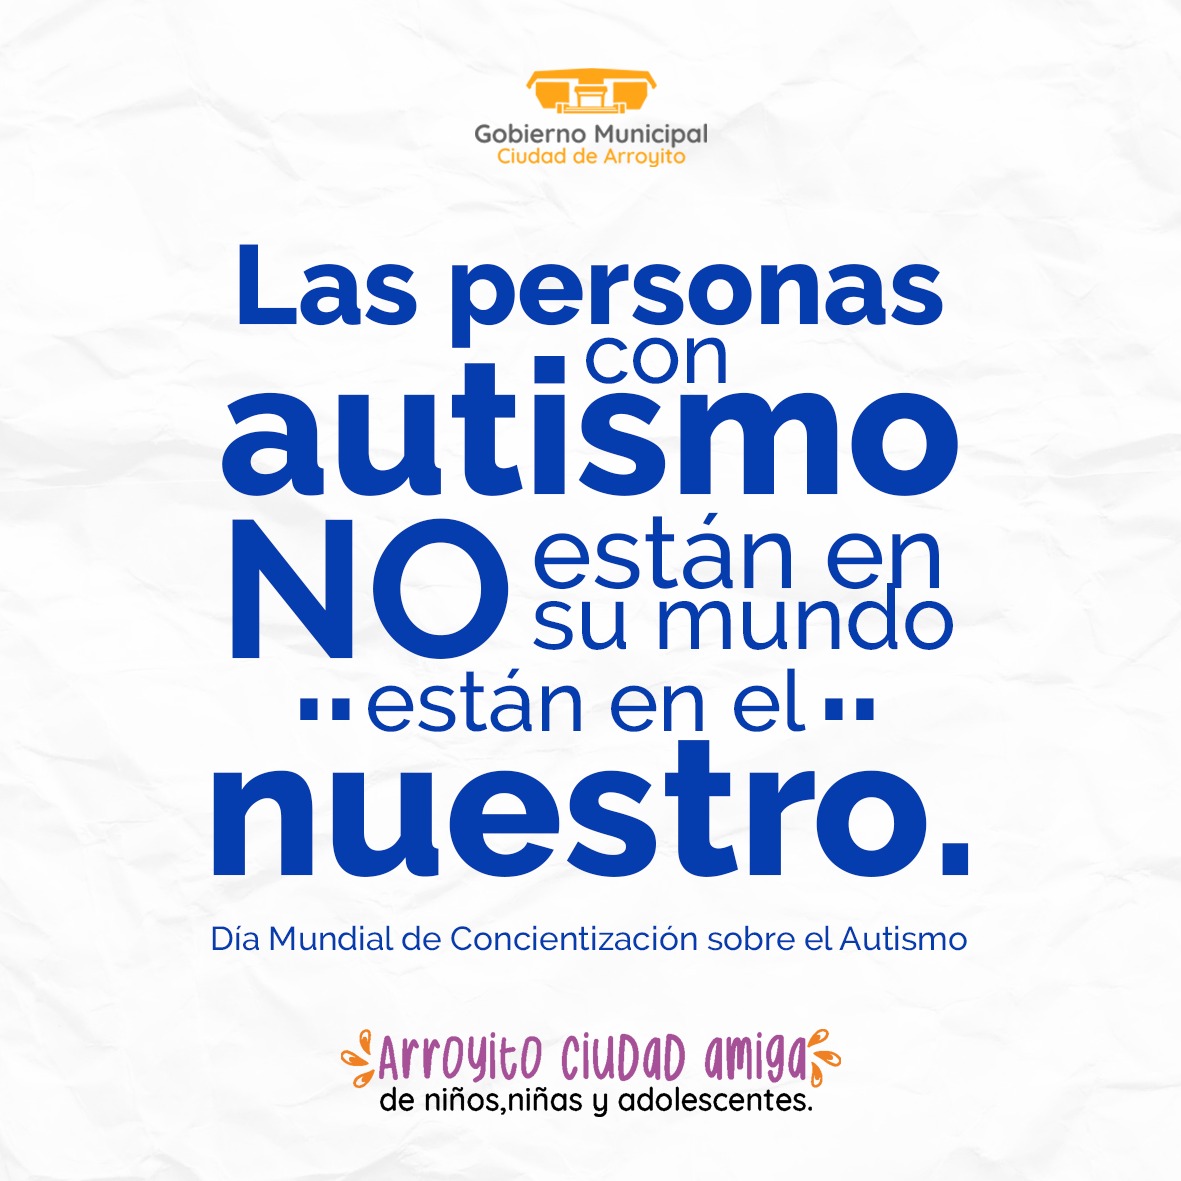 2 de Abril: Día del Autismo